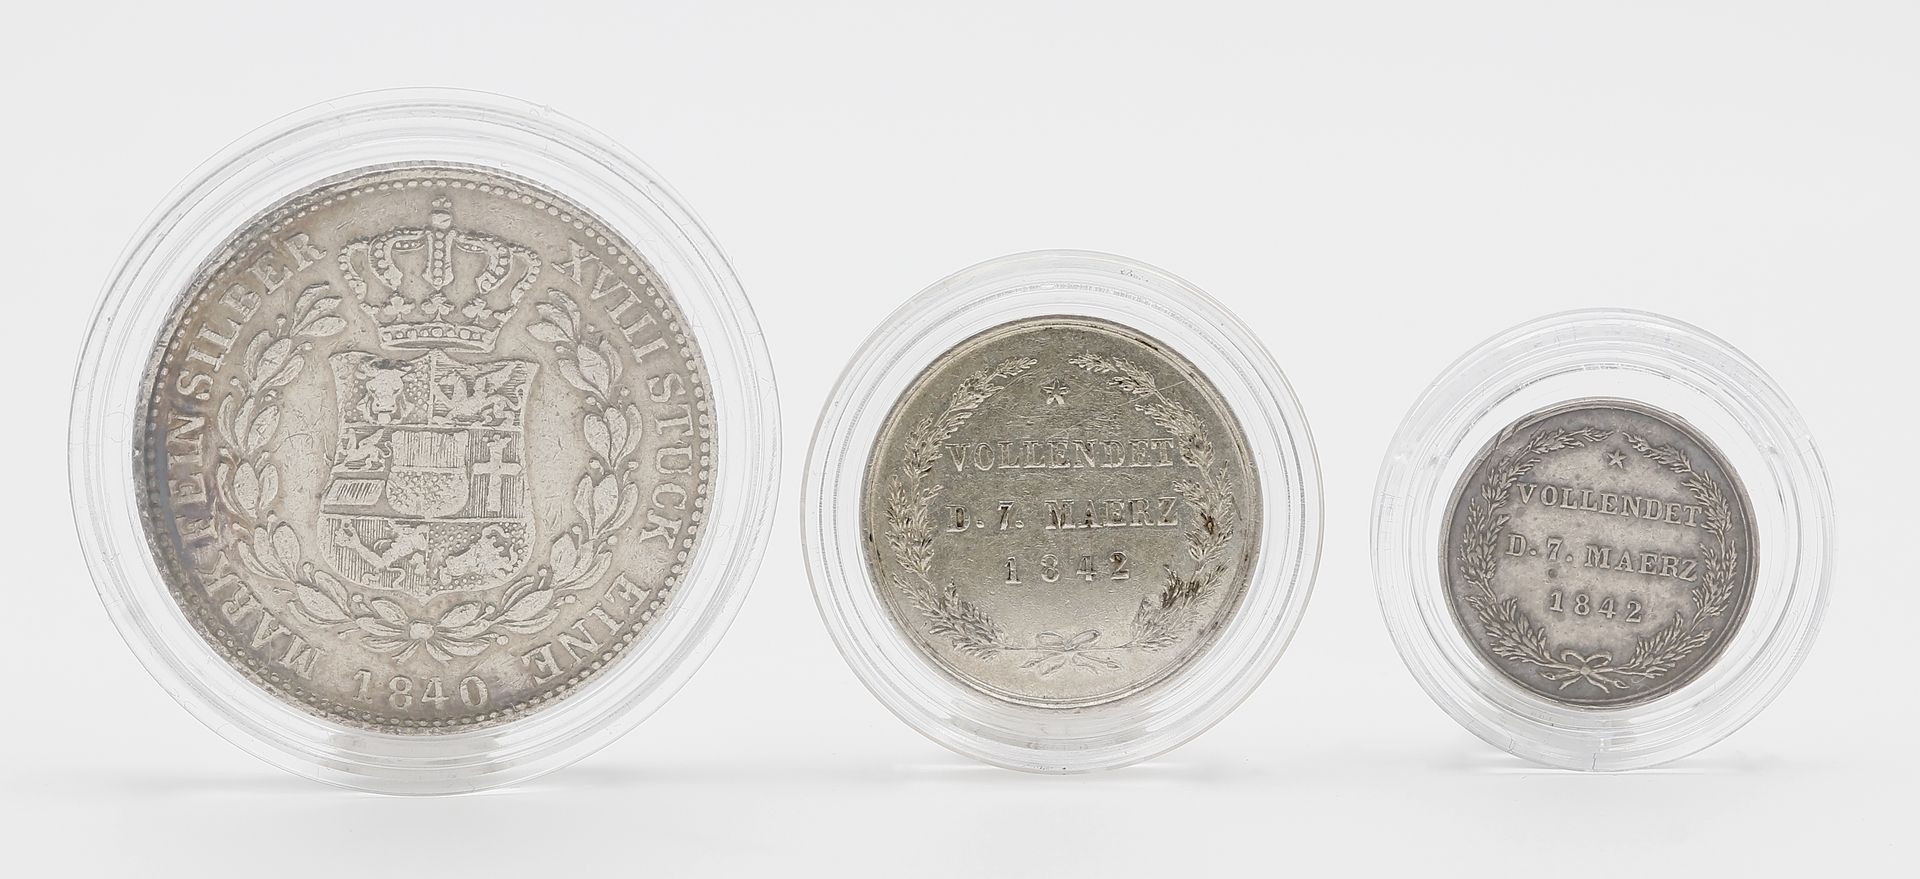 Mecklenburg-Schwerin, Paul Friedrich, drei Silbermünzen/-medaillen: